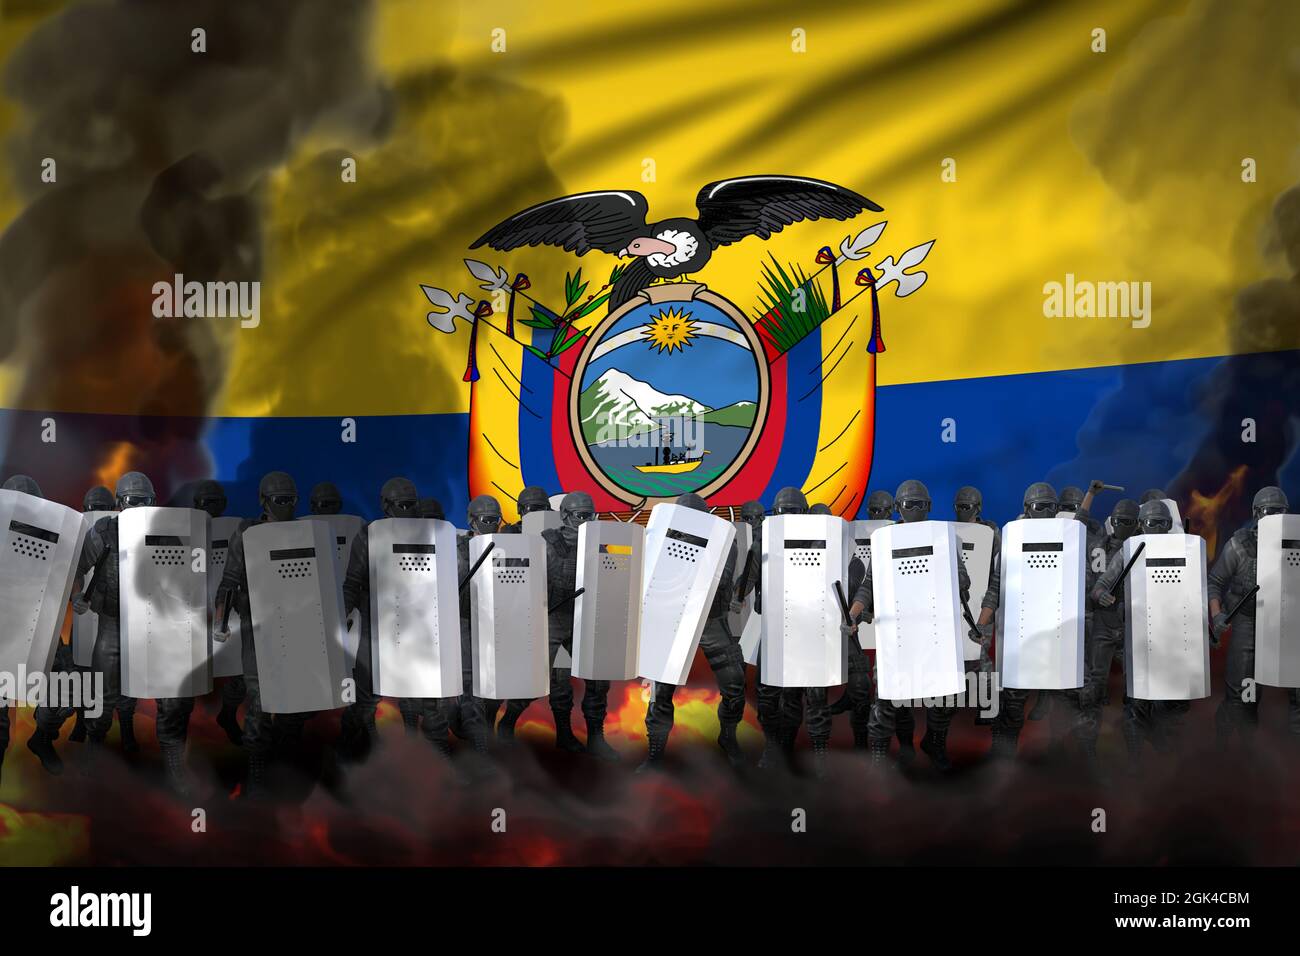 Ecuador Proteststopp-Konzept, Polizei Spezialeinheiten in starkem Rauch und Feuer Schutz Land gegen Meuterei - Militär 3D Illustration auf Flagge b Stockfoto